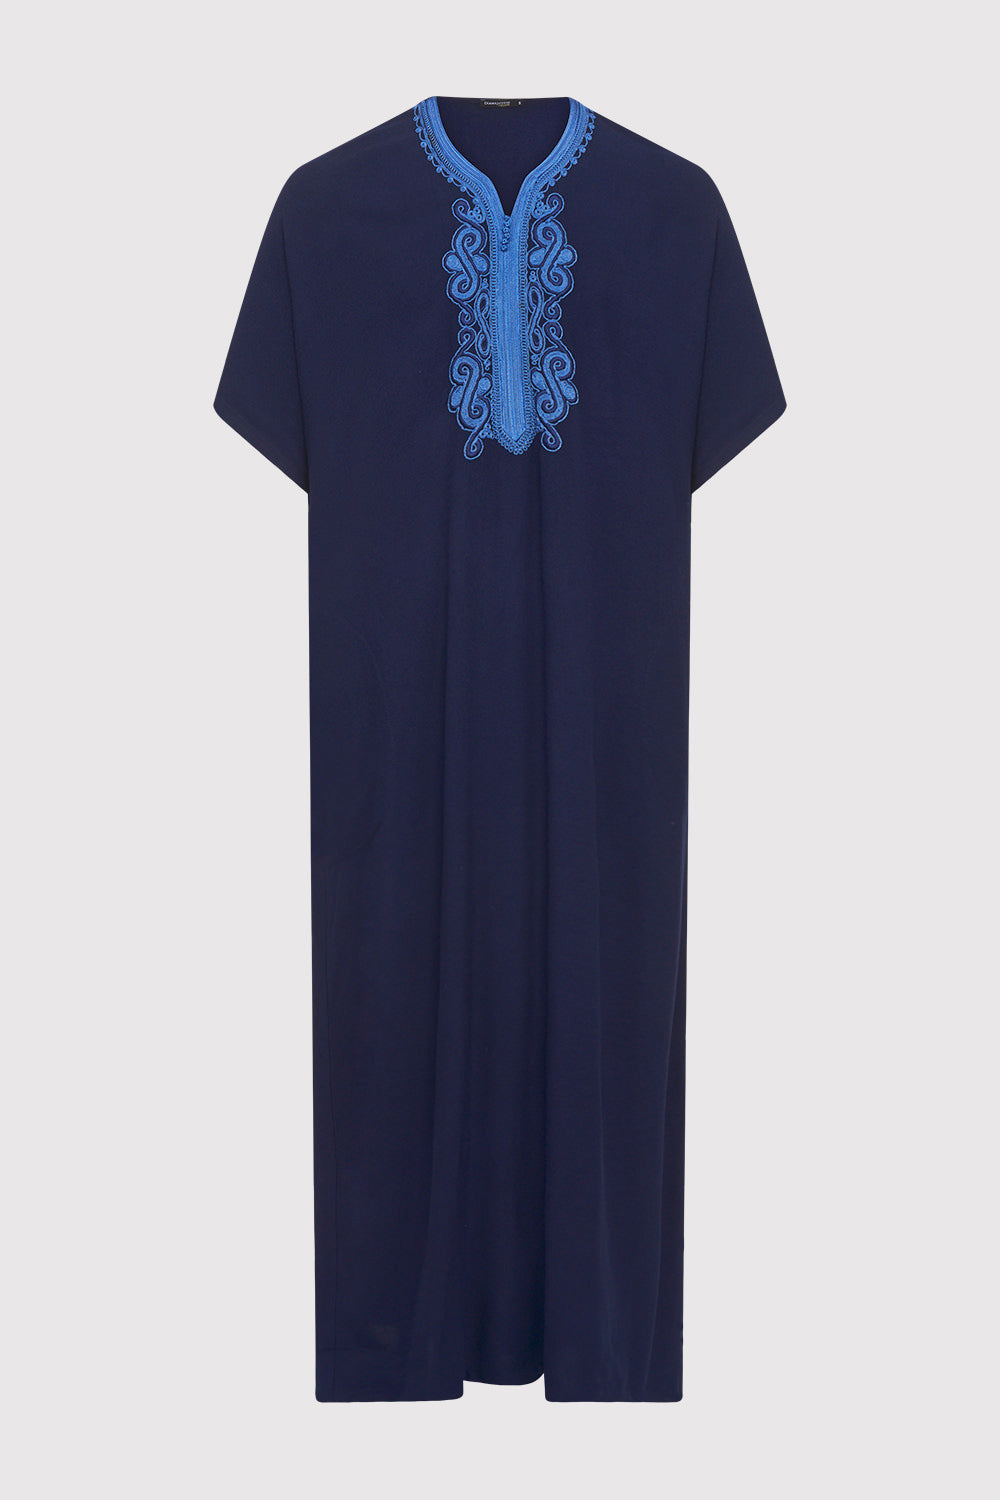 Gandoura Haitham Men's Short Sleeve Full-Length Embroidered Robe Casual Thobe in Dark Blue